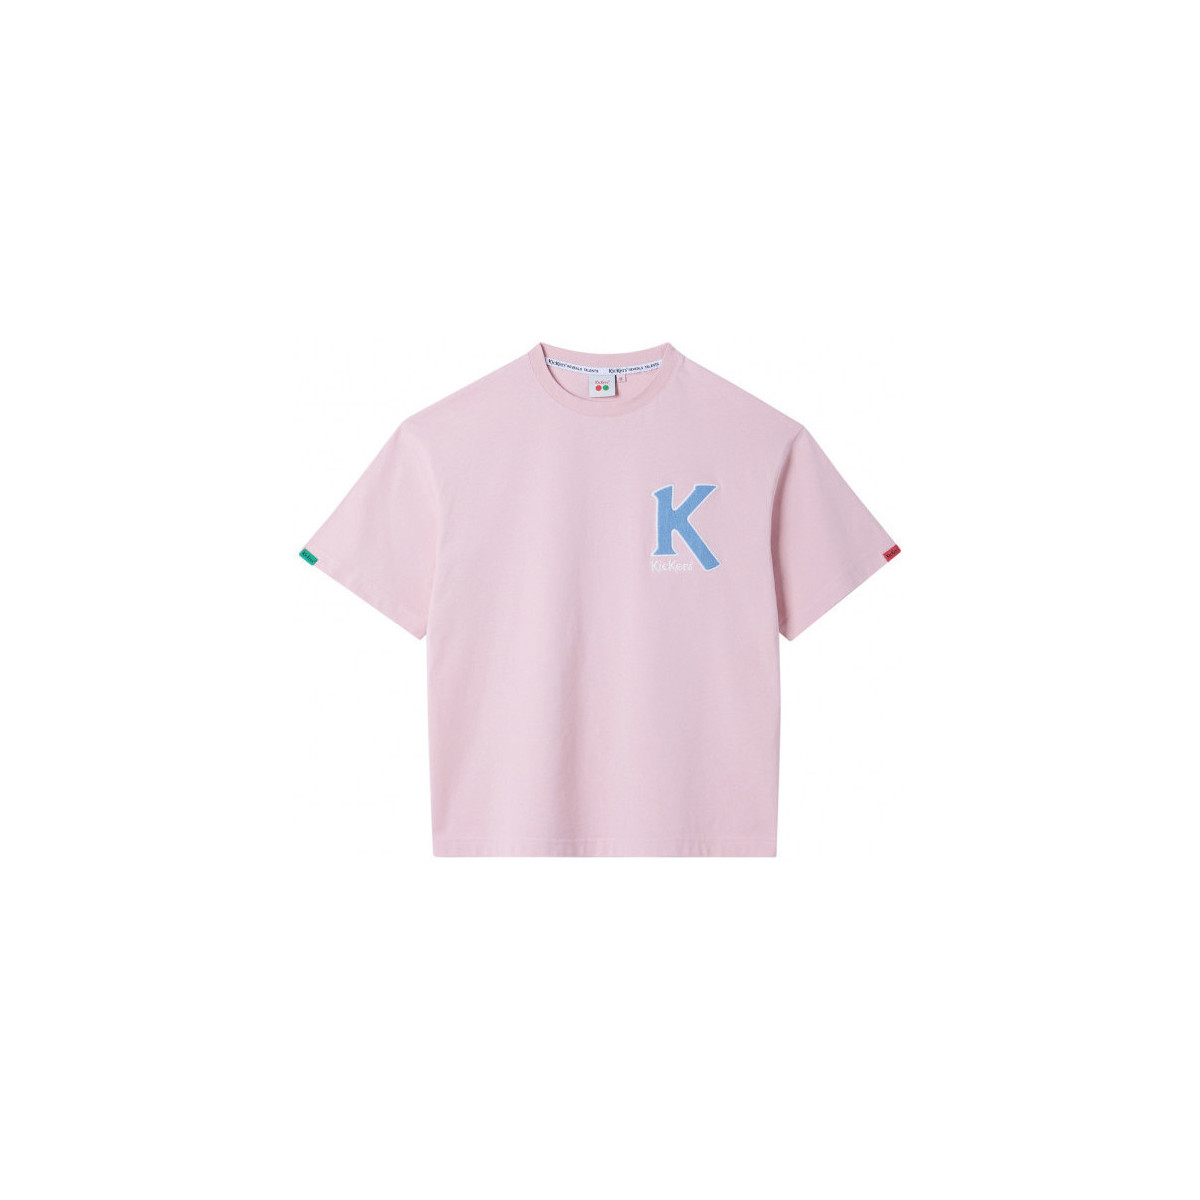 Oblačila Majice & Polo majice Kickers Big K T-shirt Rožnata